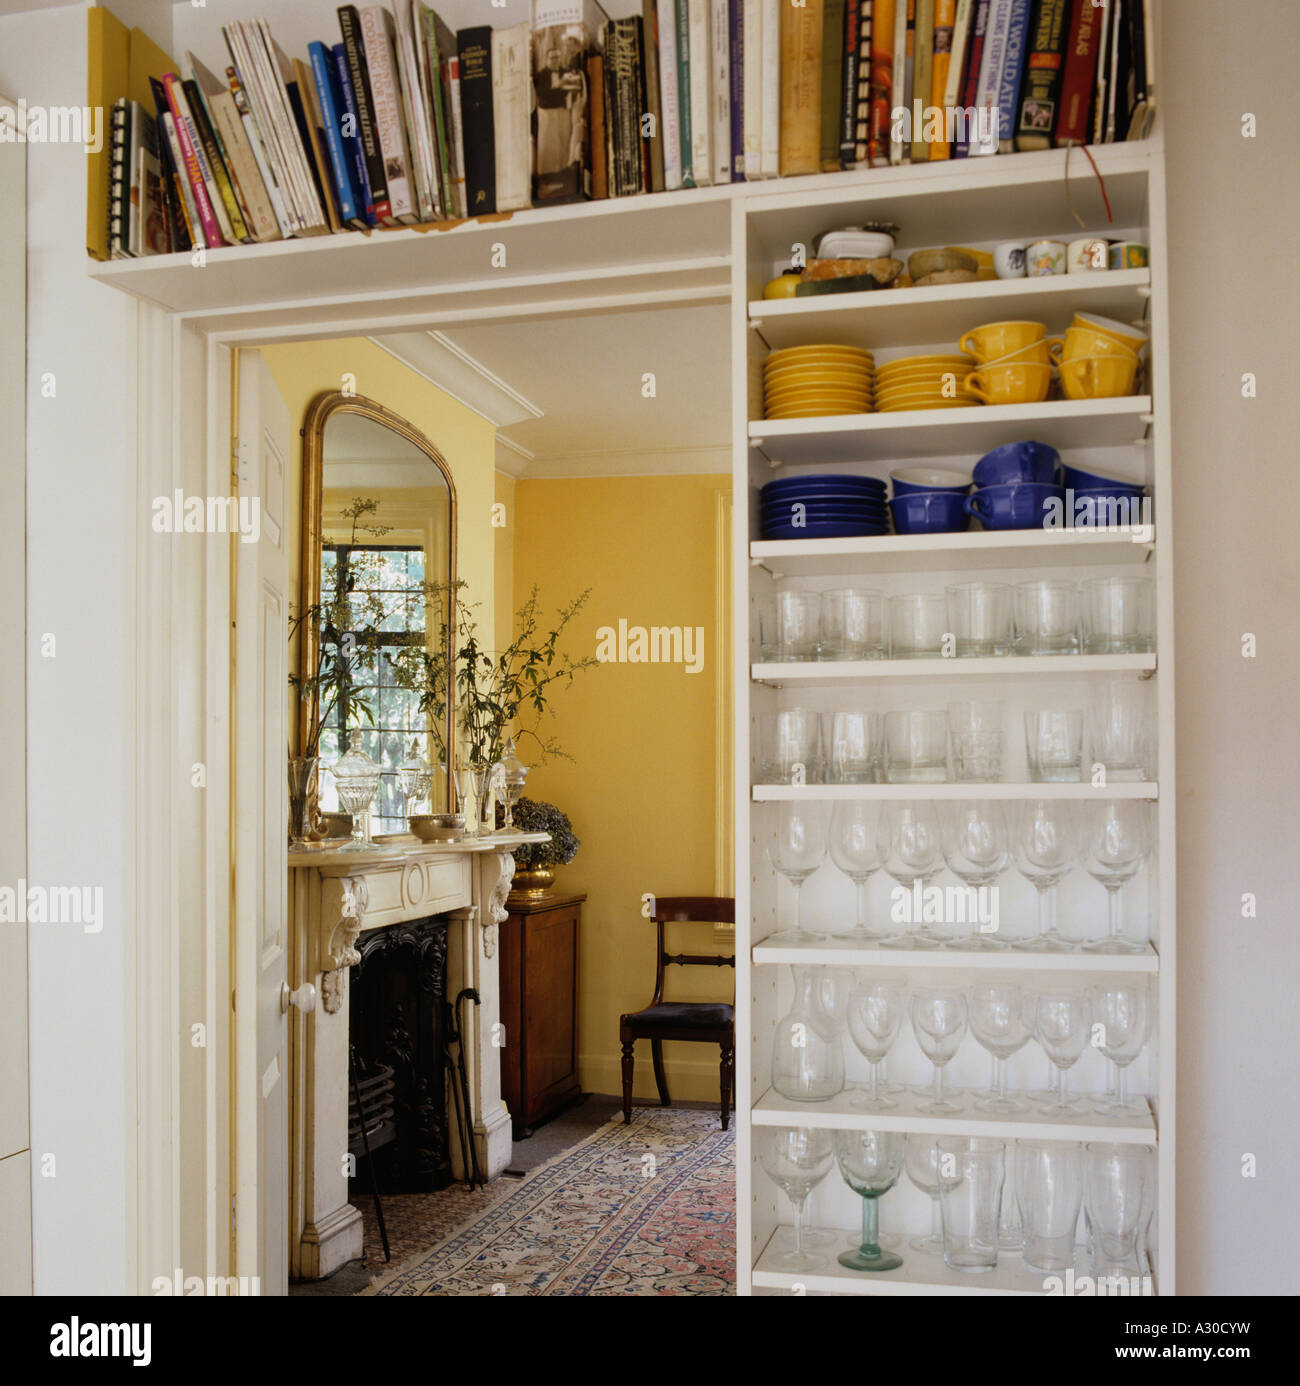 Tür mit Regal mit Büchern, Geschirr und Weingläser durchsehen, Zimmer mit  Kamin Stockfotografie - Alamy